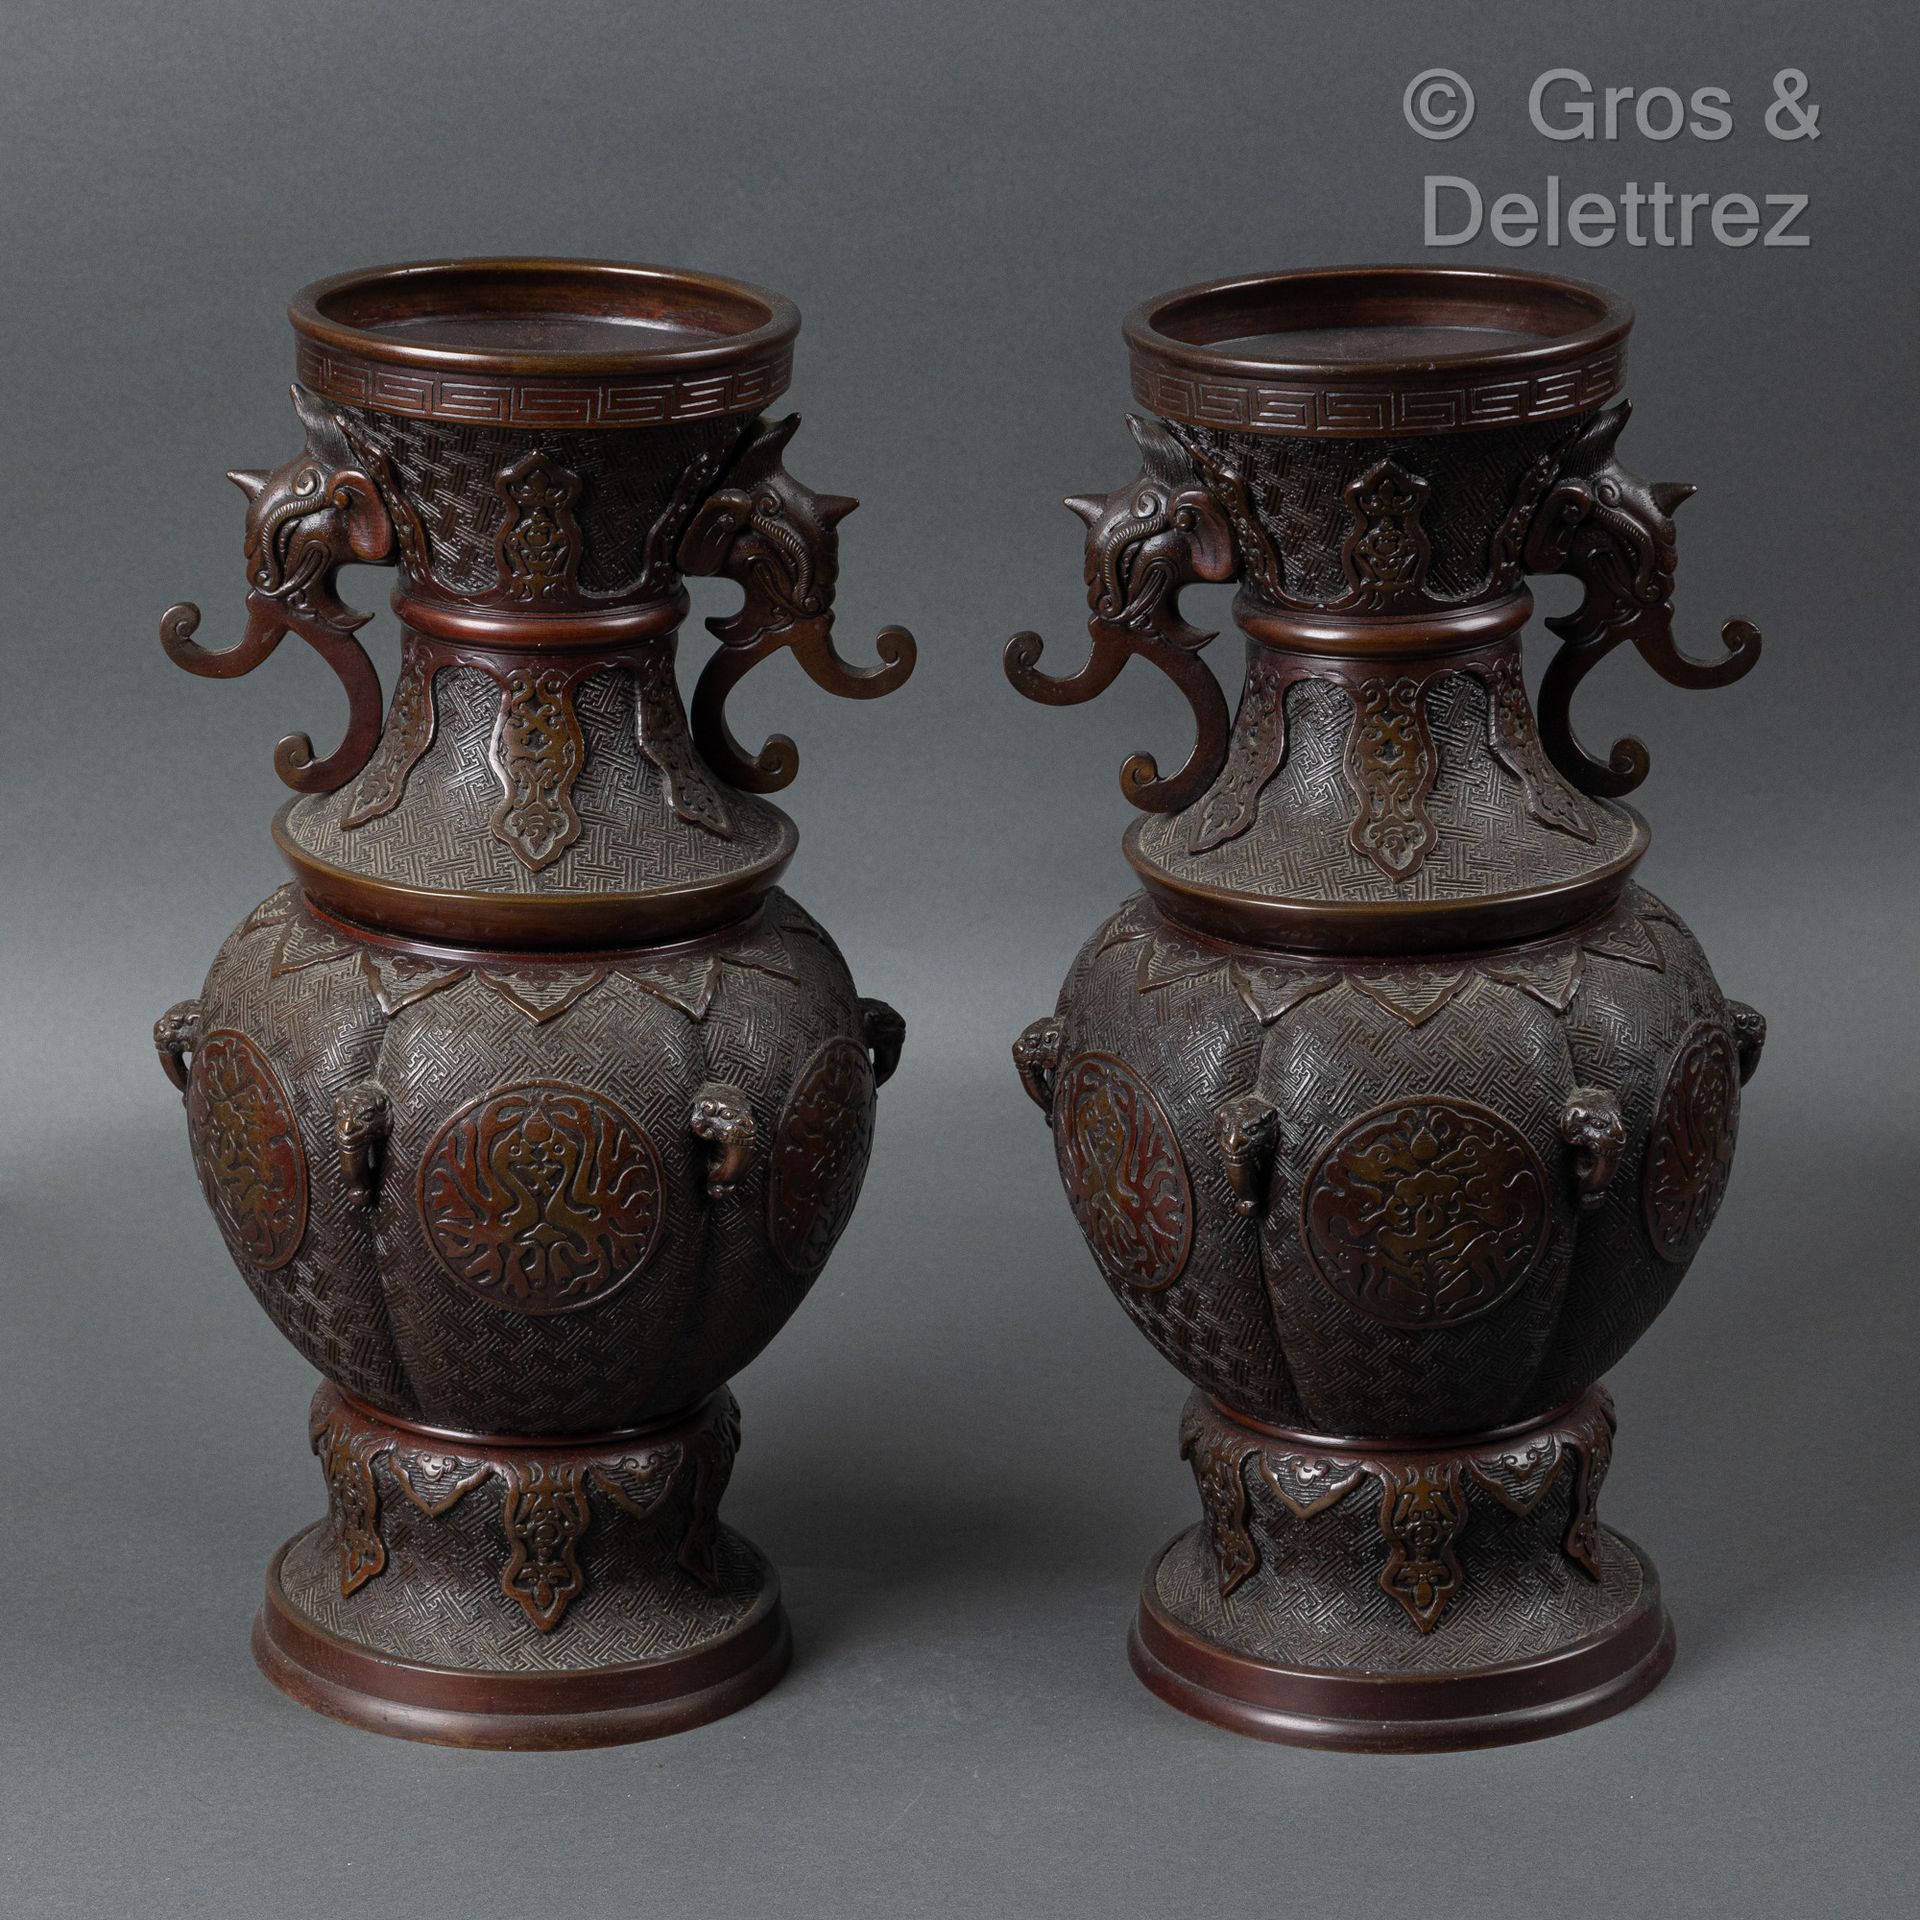 Null 日本，明治时期
一对青铜柱形花瓶，几何背景上有凤凰对峙的徽章装饰，颈部装饰有两个象头造型的把手。 
H.41.5厘米